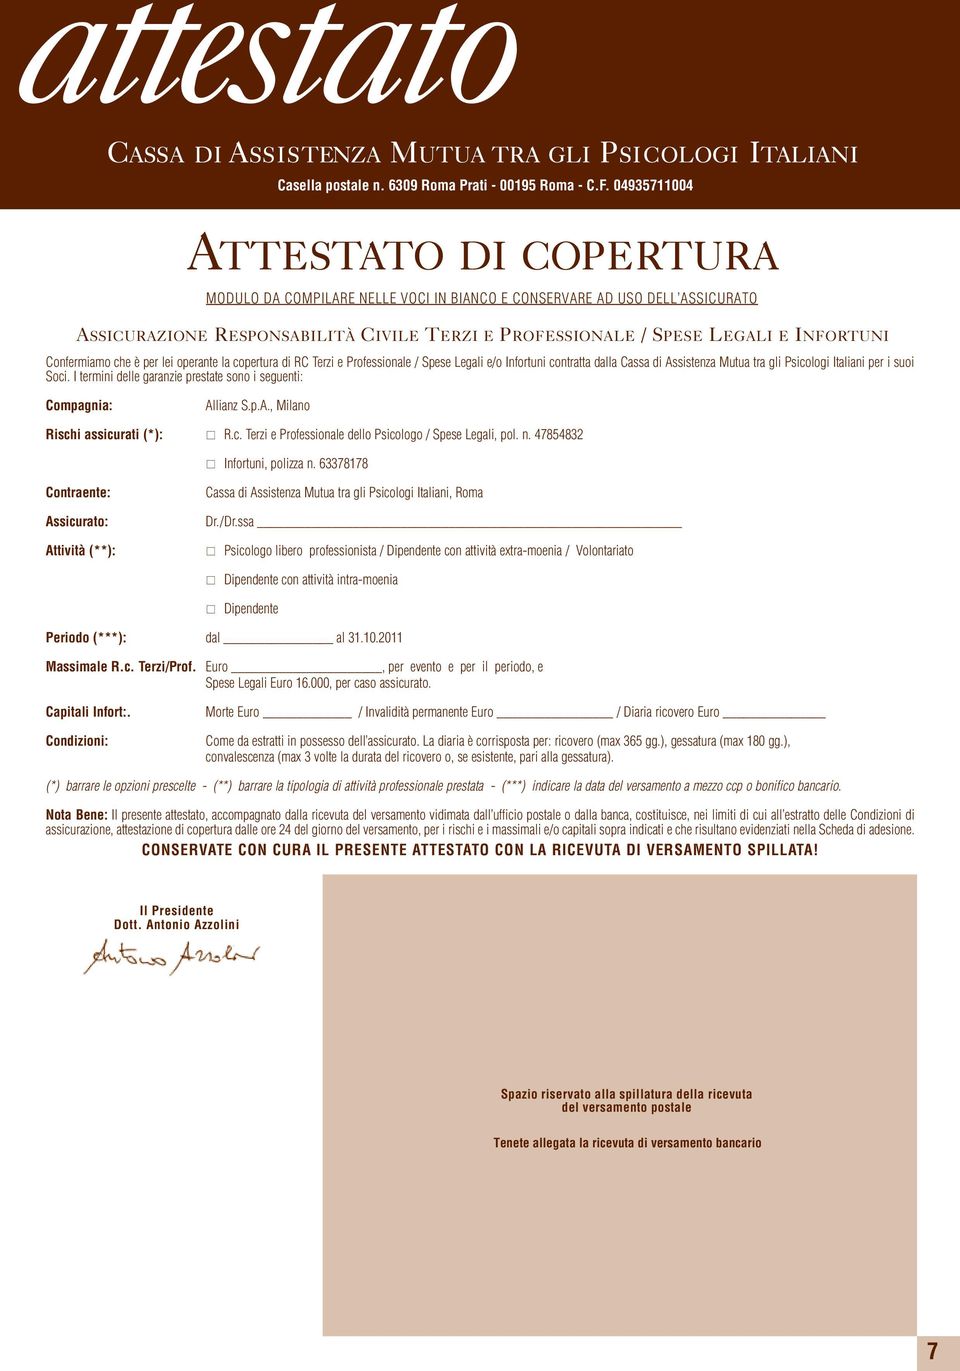 operante la copertura di RC Terzi e Professionale / Spese Legali e/o Infortuni contratta dalla Cassa di Assistenza Mutua tra gli Psicologi Italiani per i suoi Soci.